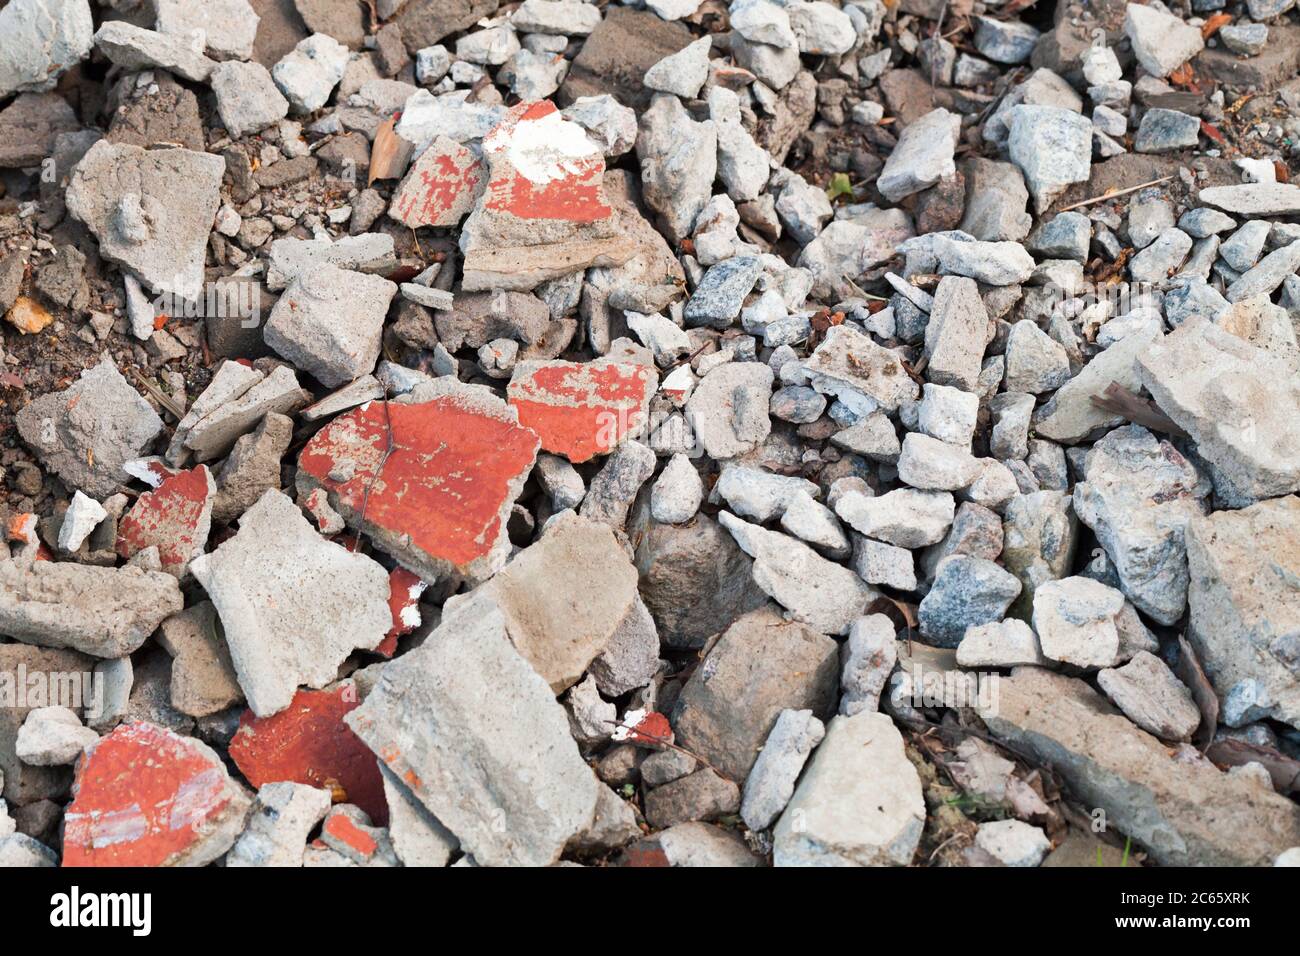 La photo de fond de la poubelle de construction, des briques cassées et des morceaux de béton reposent sur le sol Banque D'Images